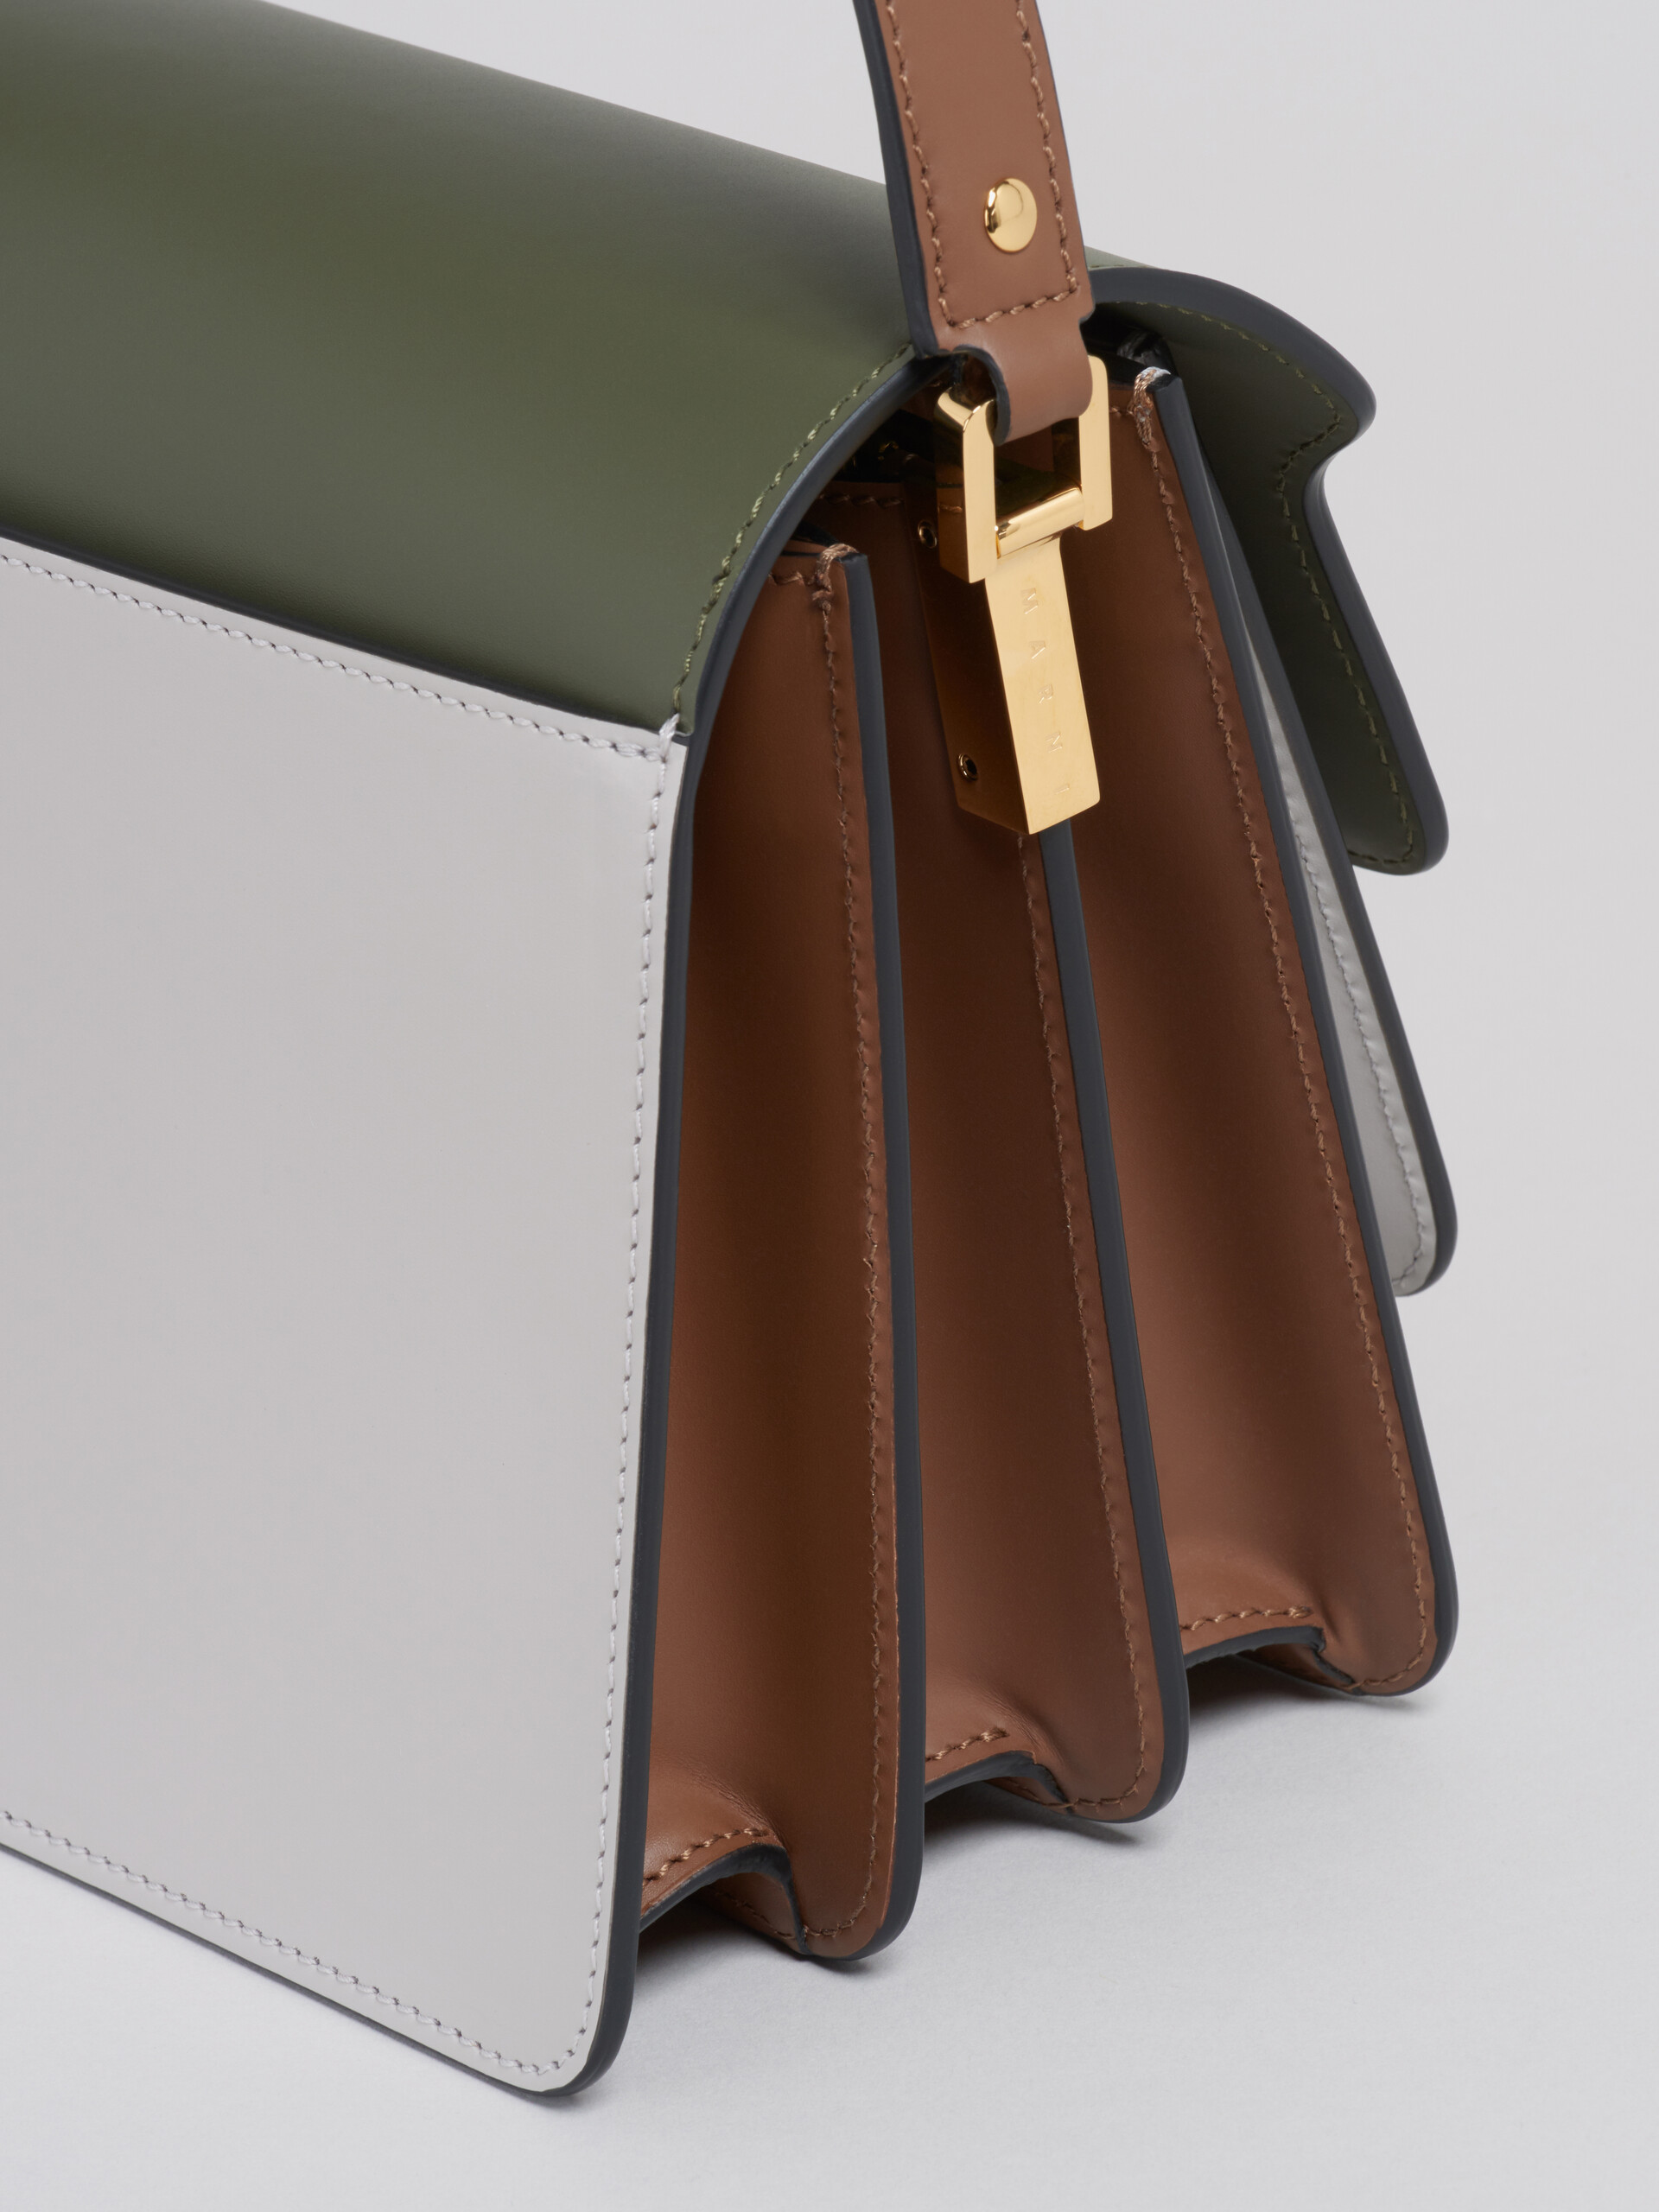 Bolso TRUNK de piel verde gris y marrón - Bolsos de hombro - Image 4